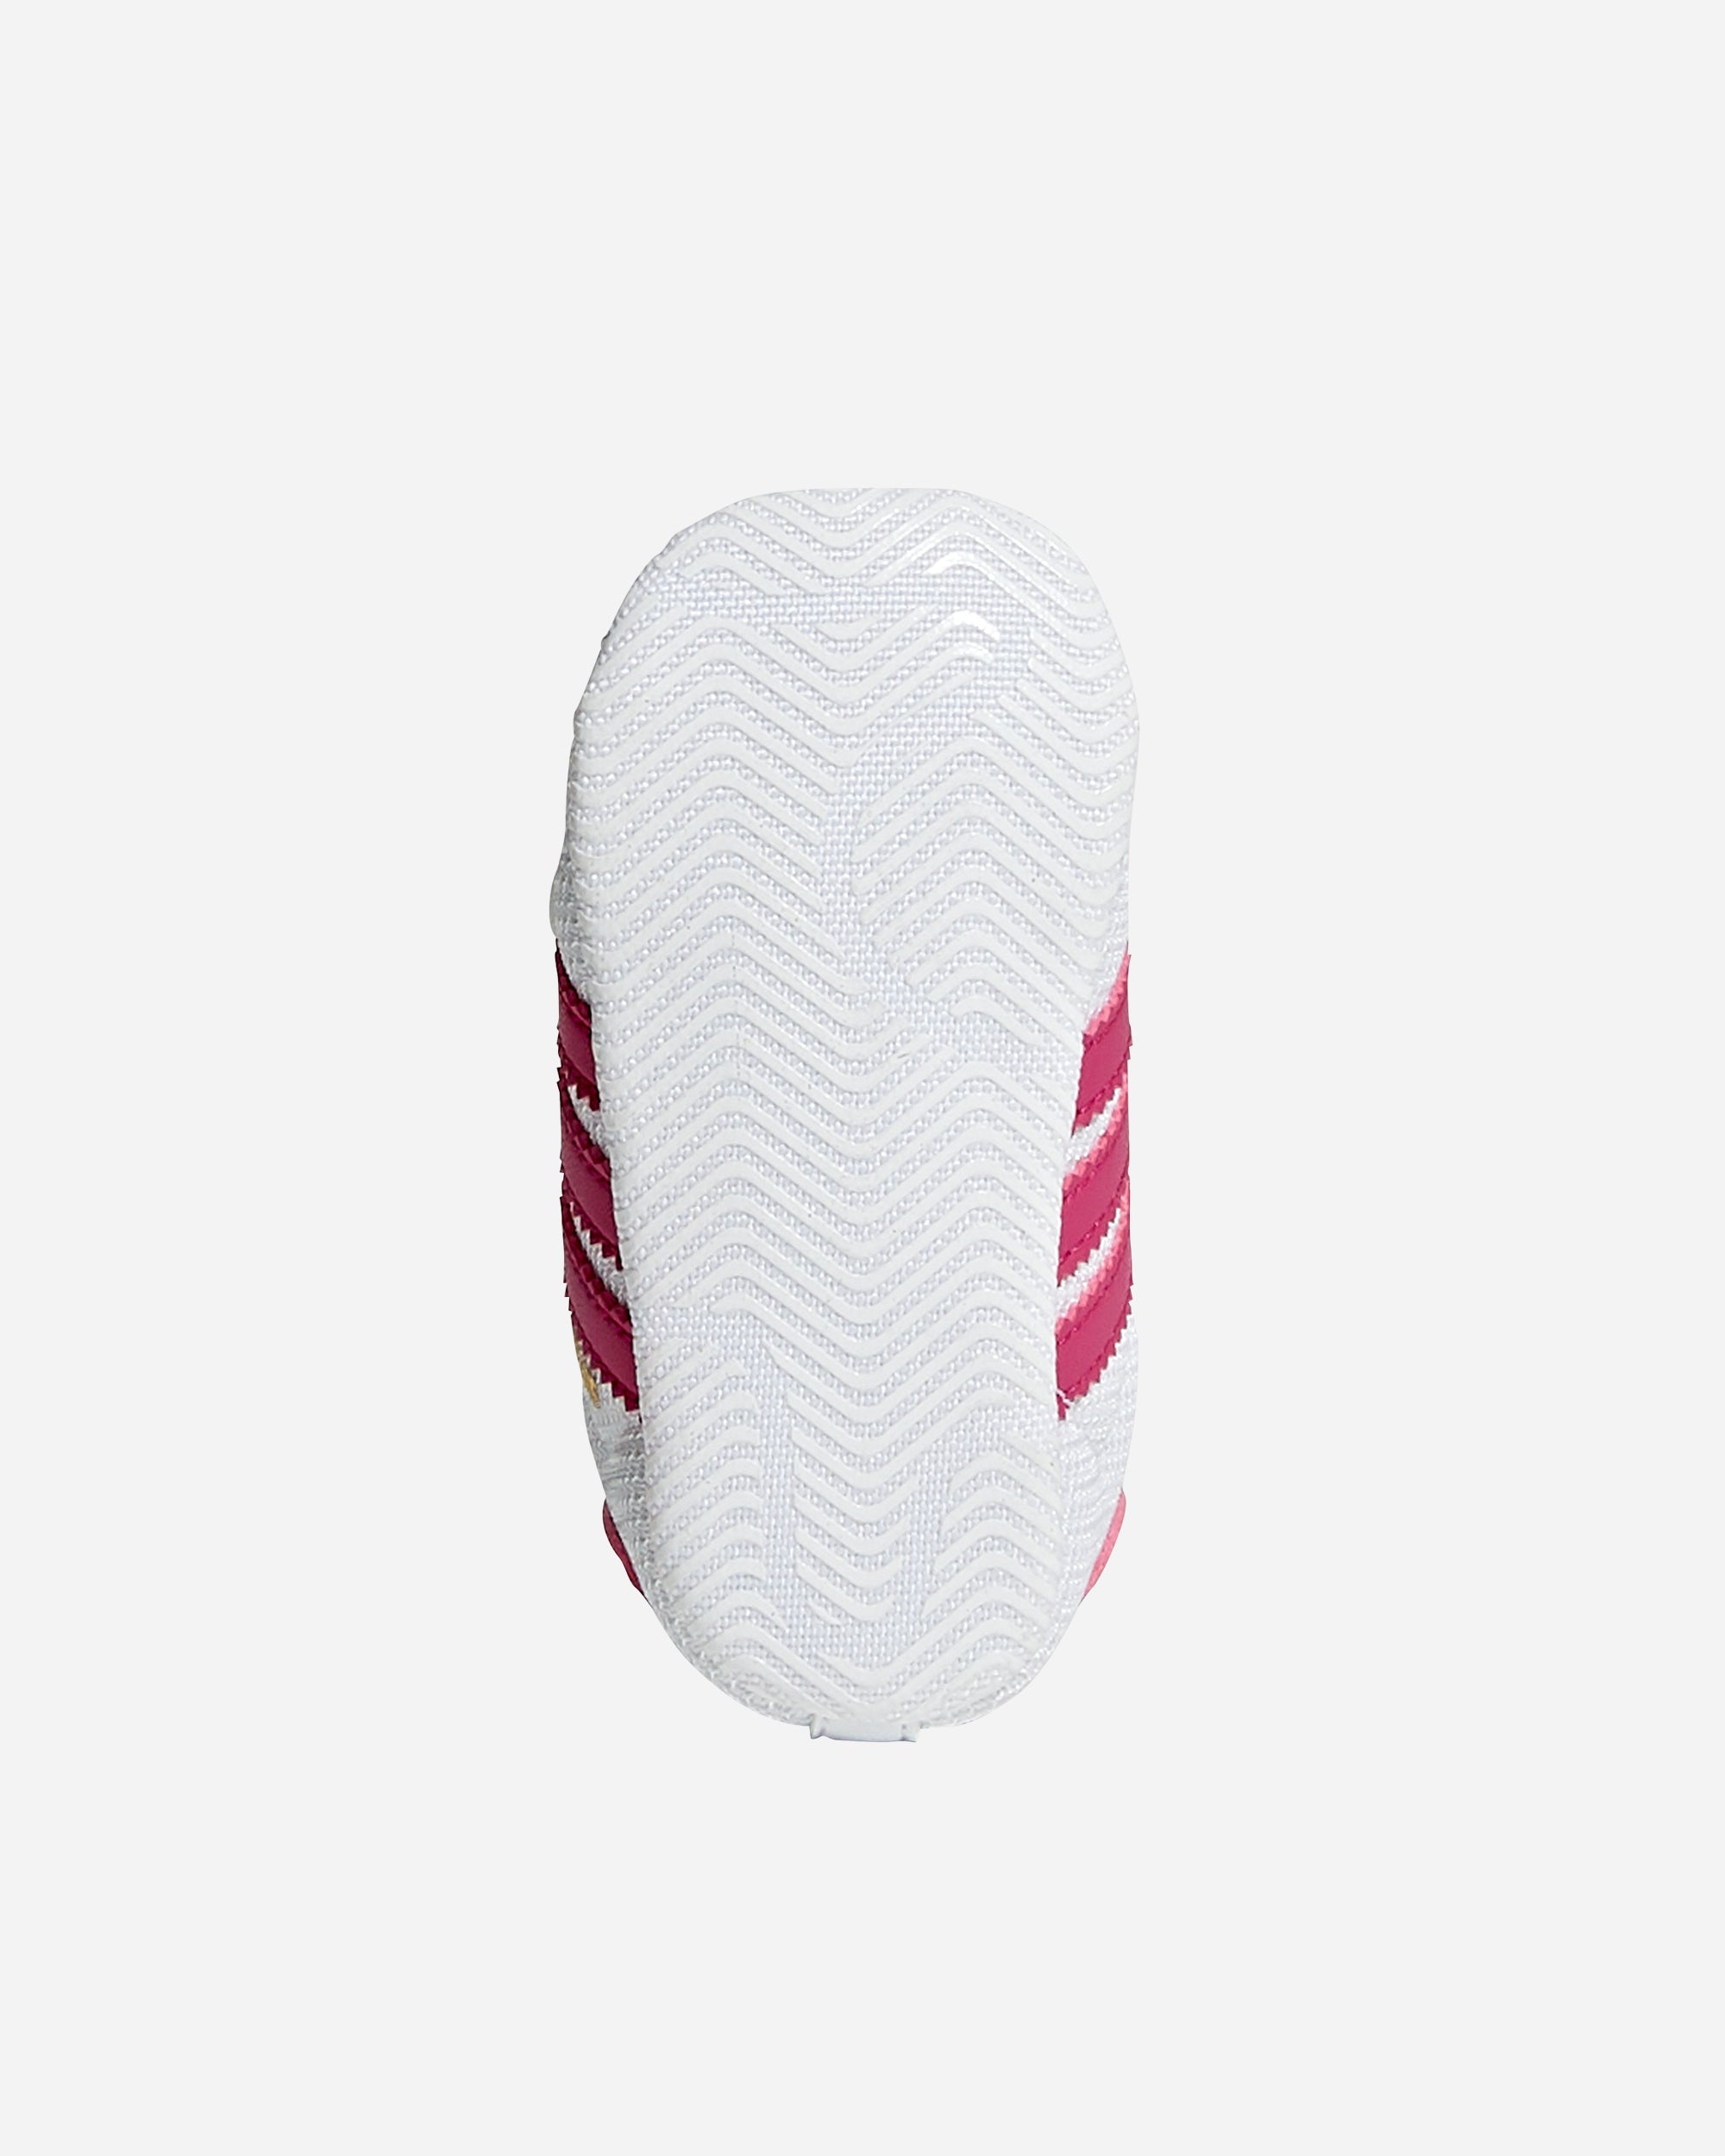 adidas Originals Superstar (Baby) White/Pink S79917